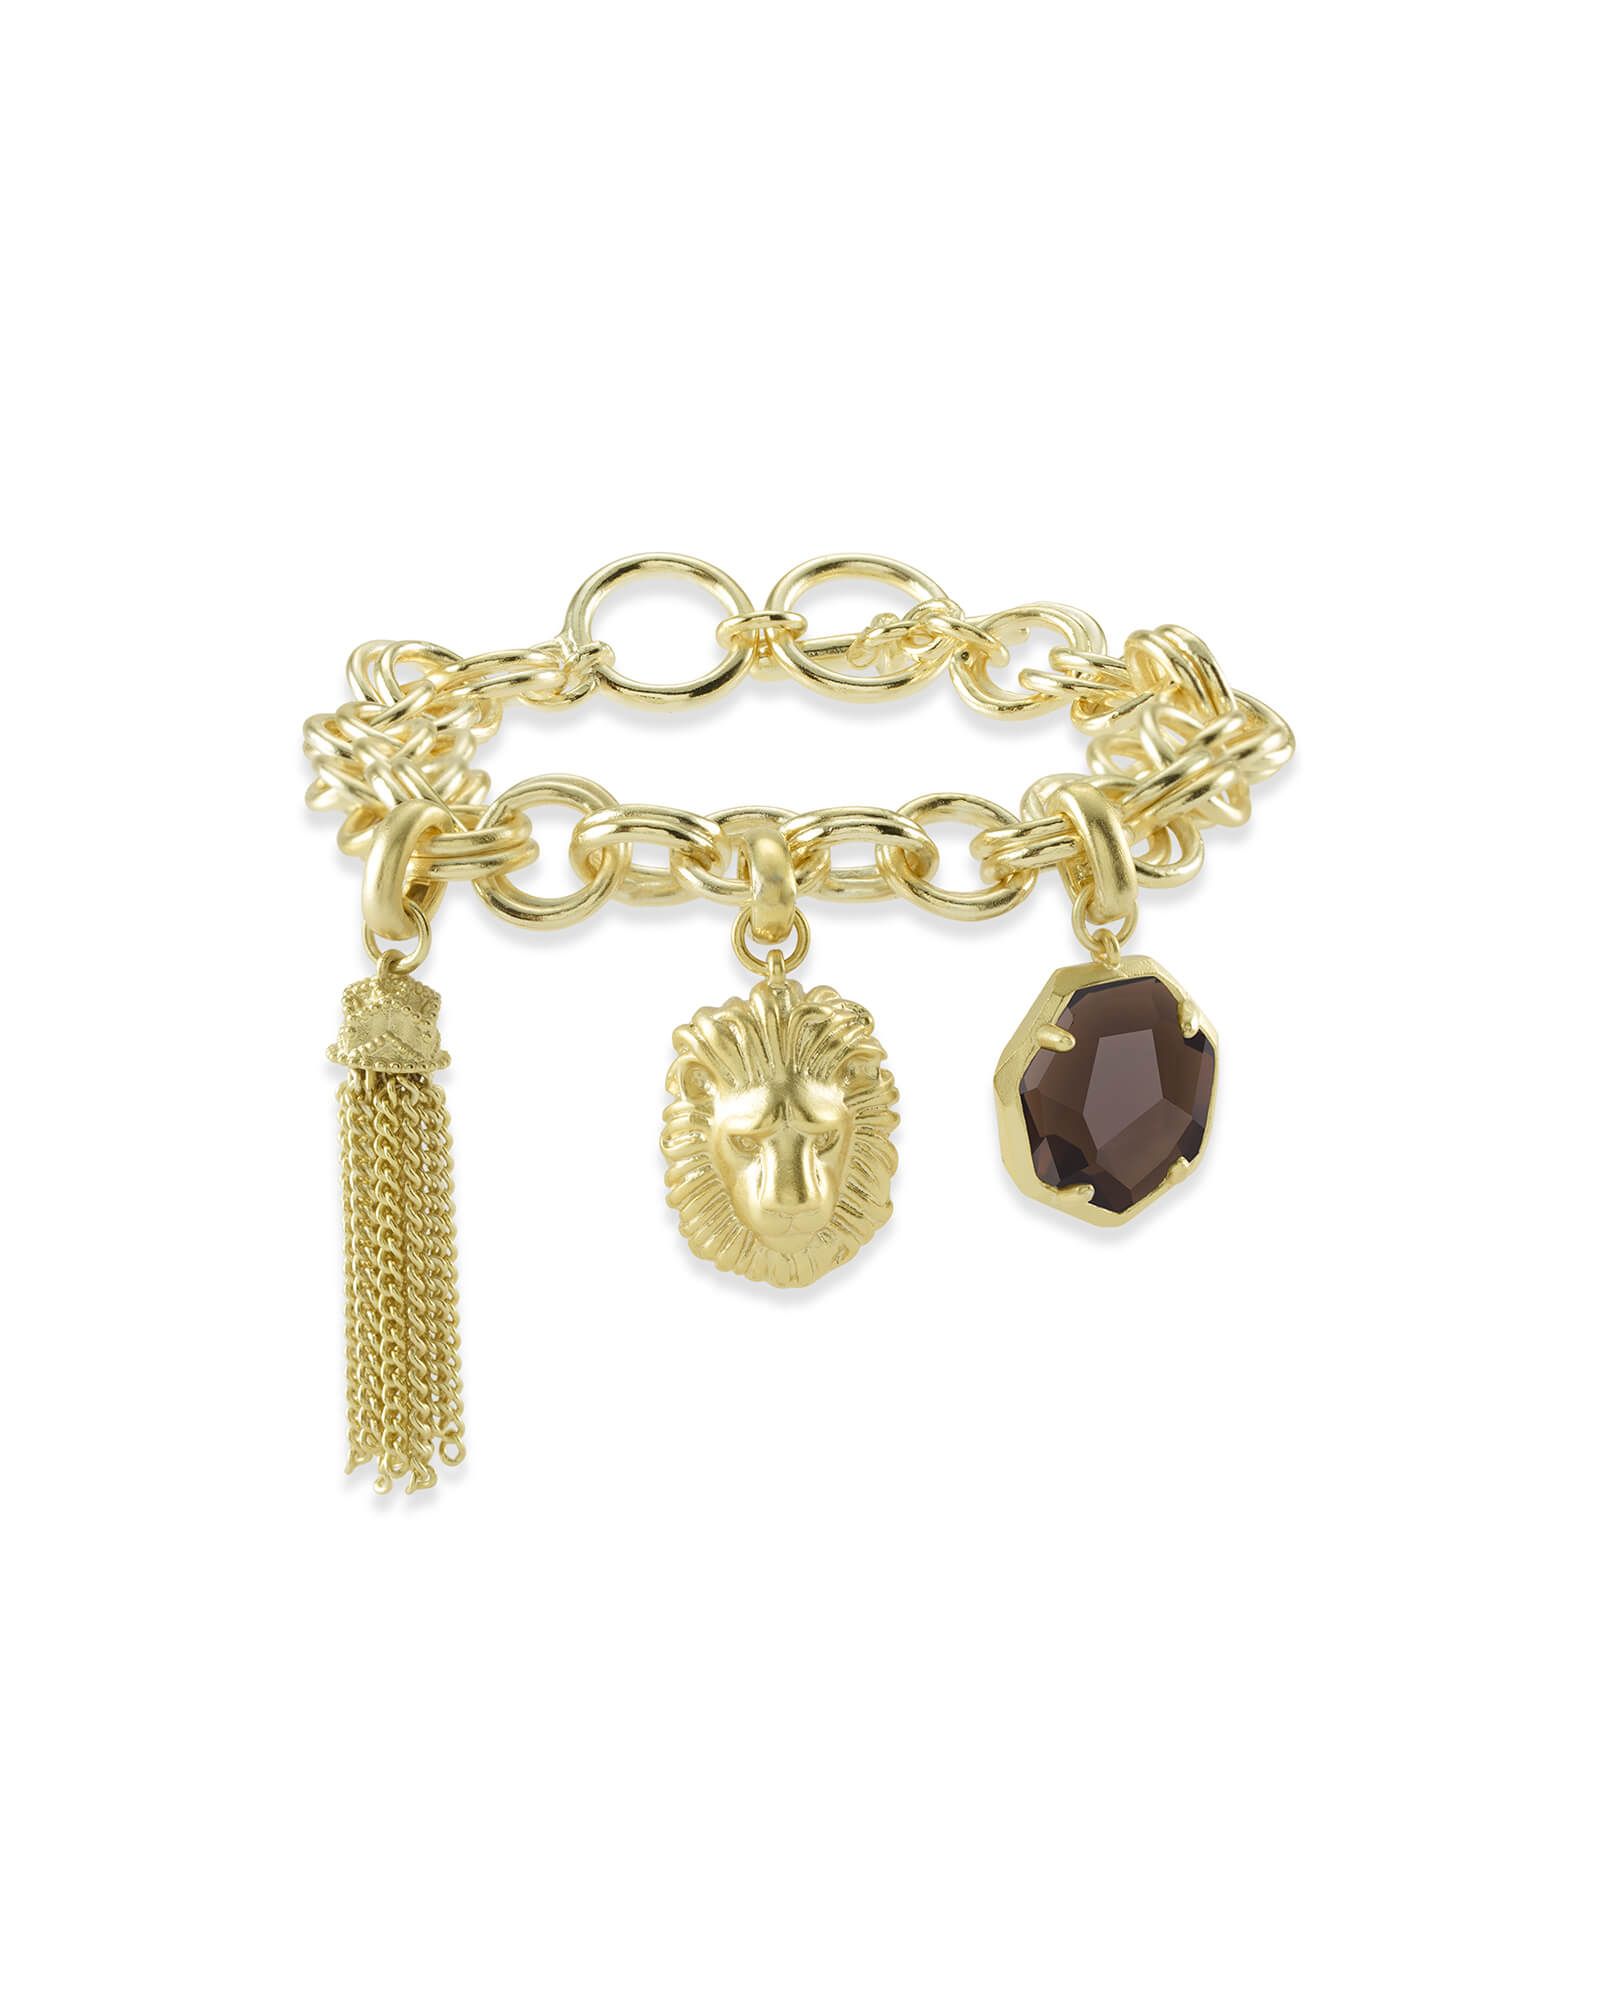 Fierce Charm Bracelet Set in Gold | Kendra Scott